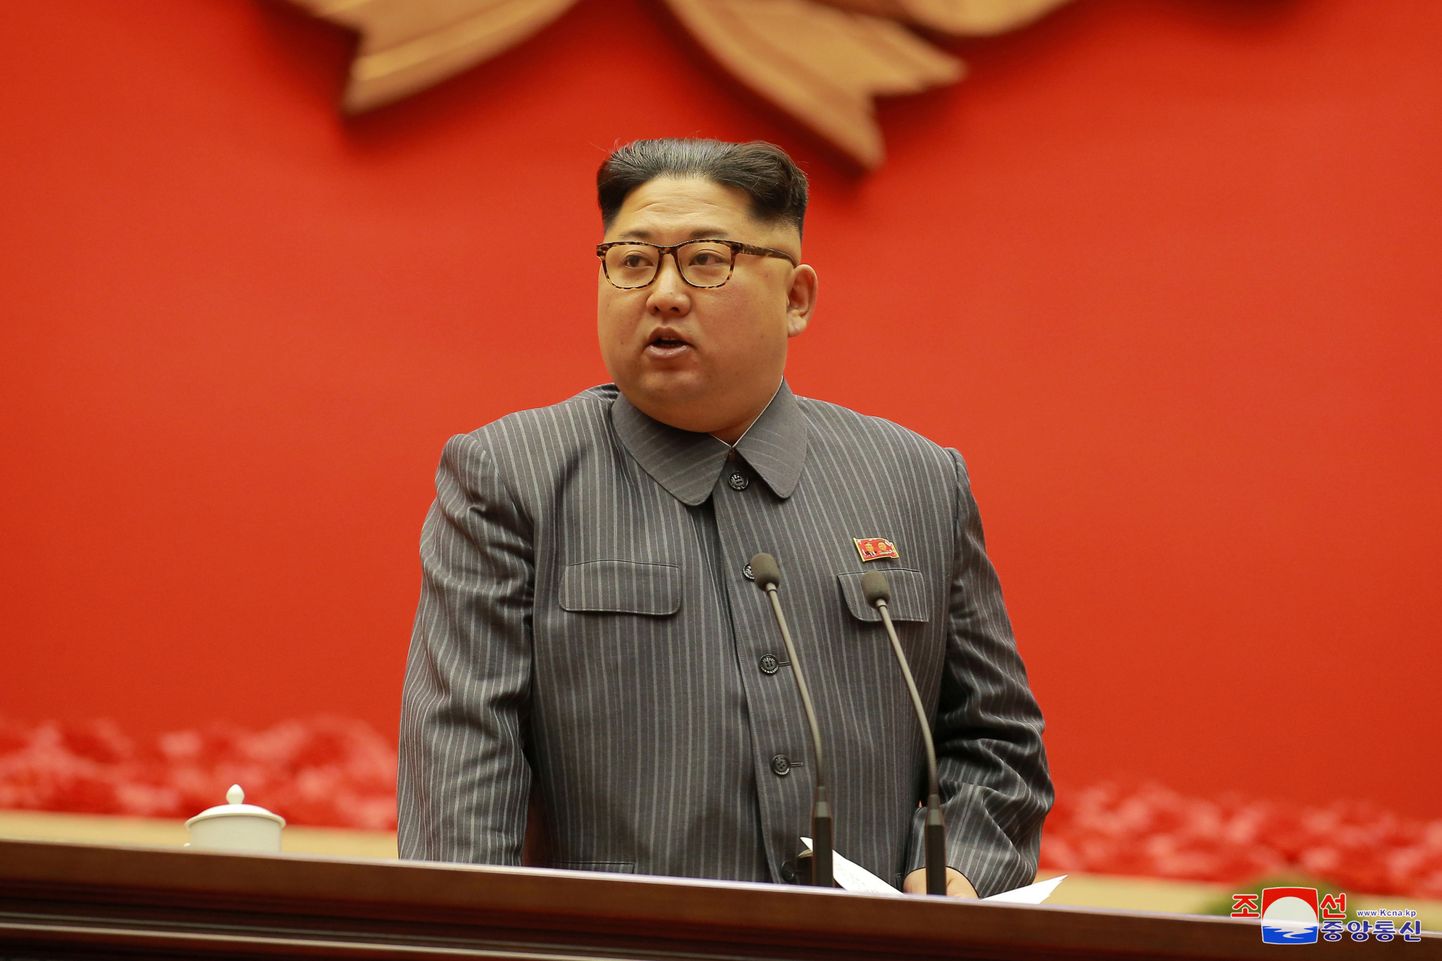 Põhja-Korea diktaator Kim Jong-un